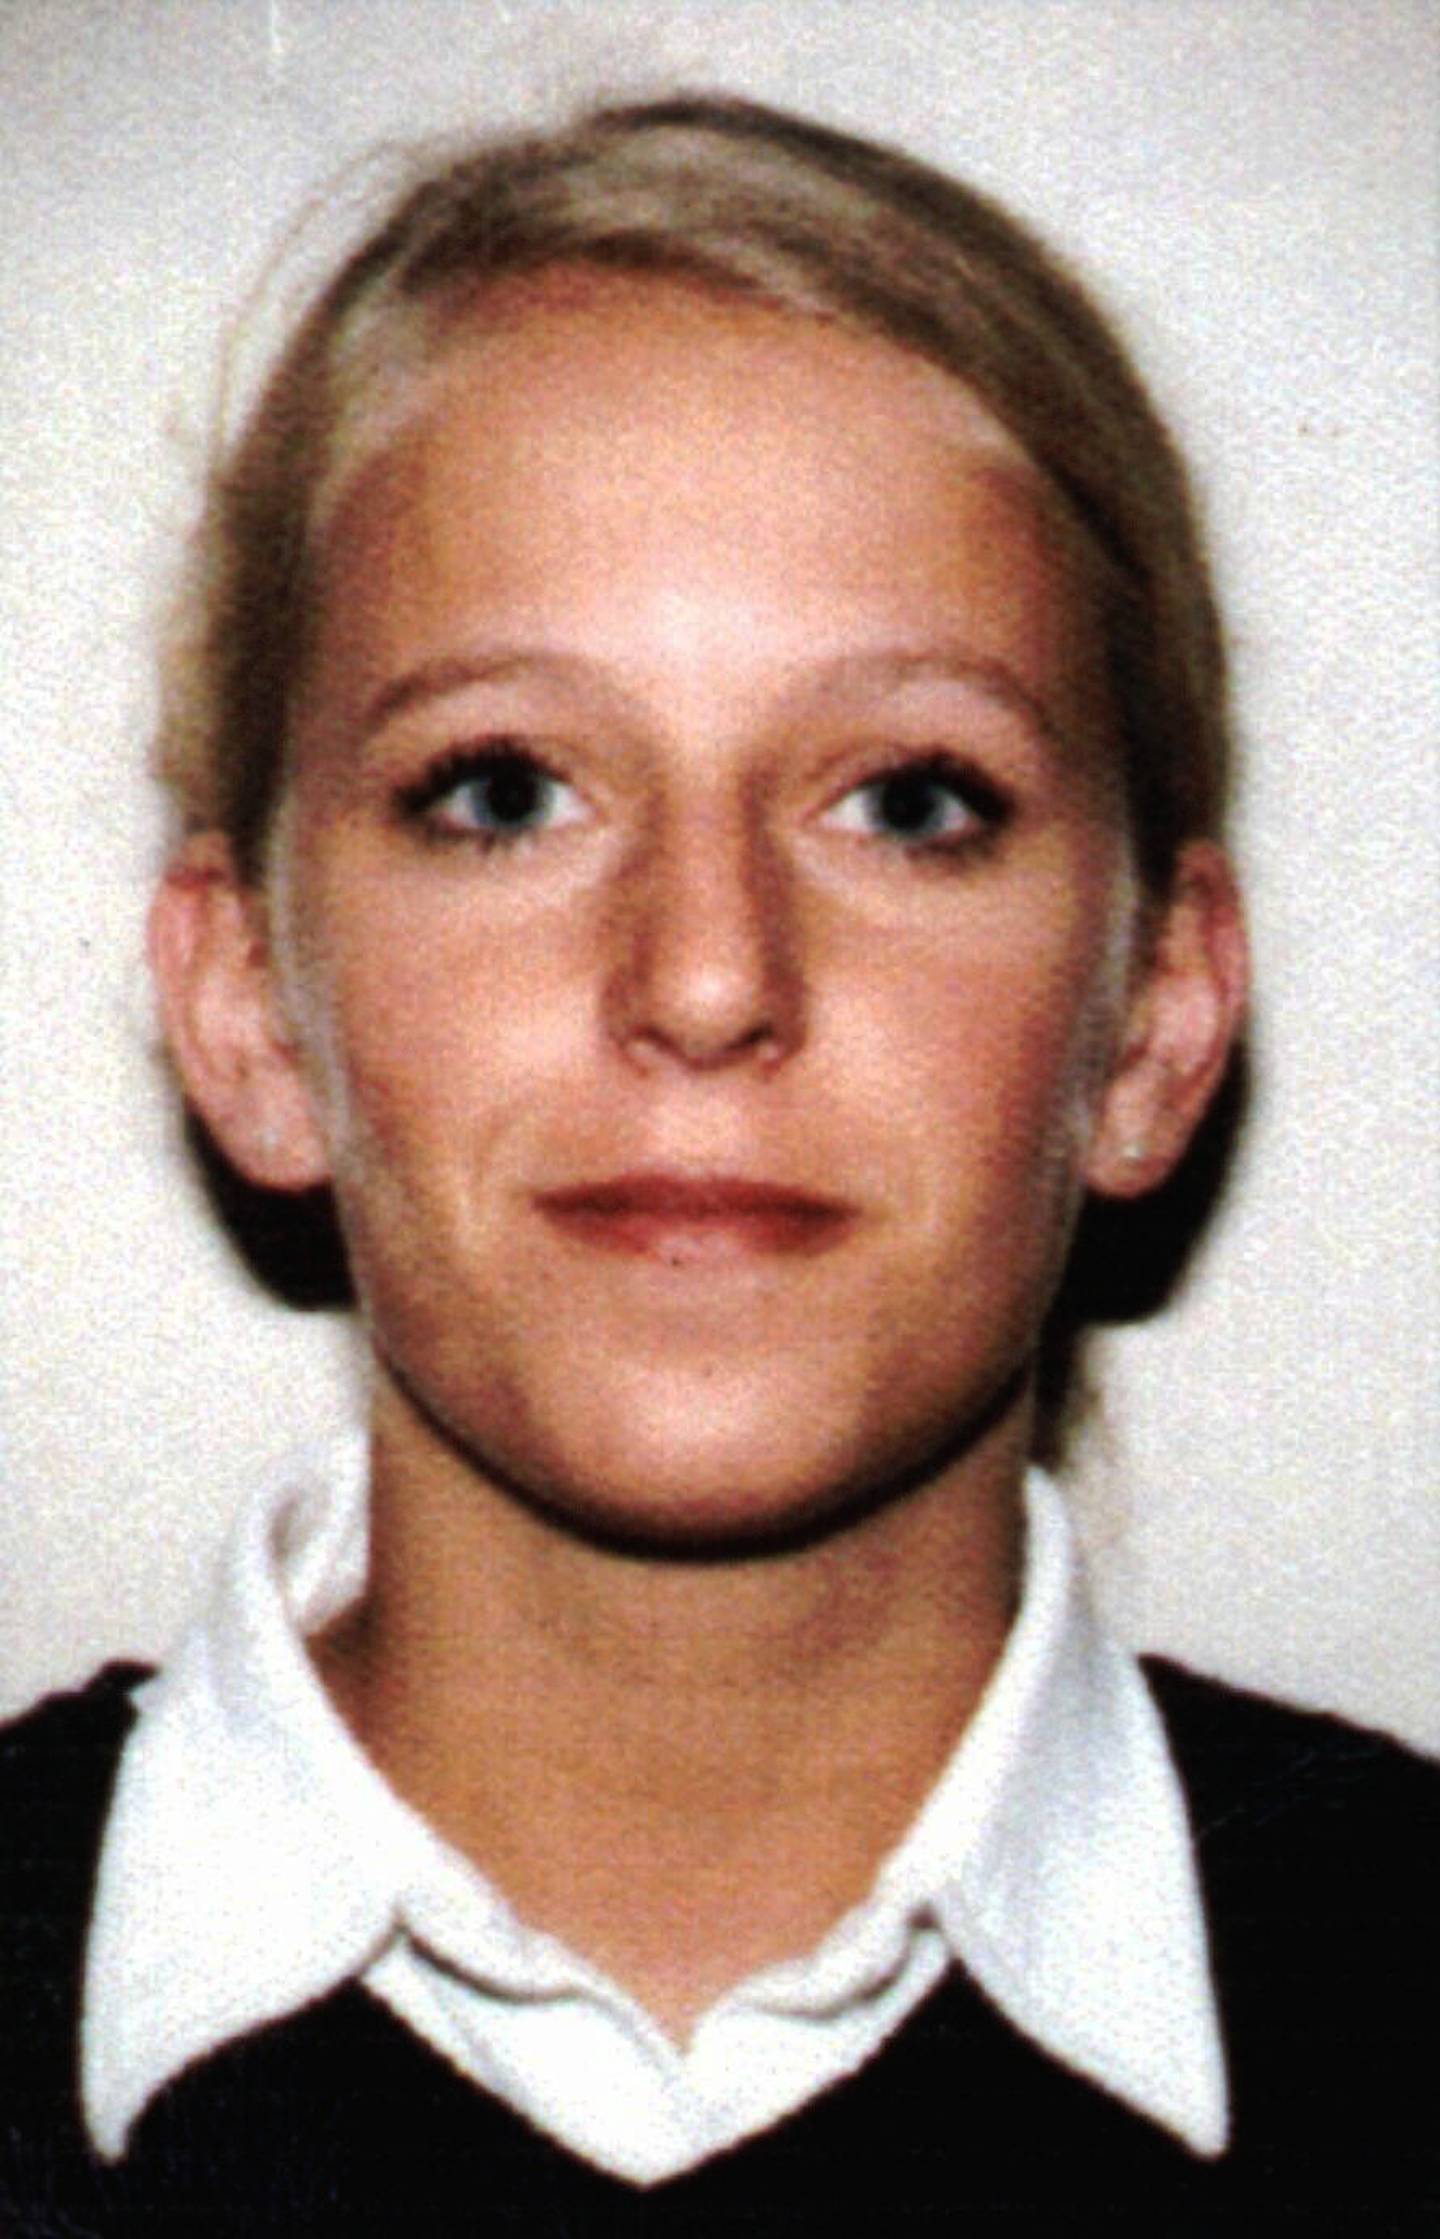 Den då 20 år gamle Tina Jørgensen vart funnen død i ein dreneringskum ved Bore kyrkje på Jæren i år 2000. Foto: Politiet / NTB / NPK